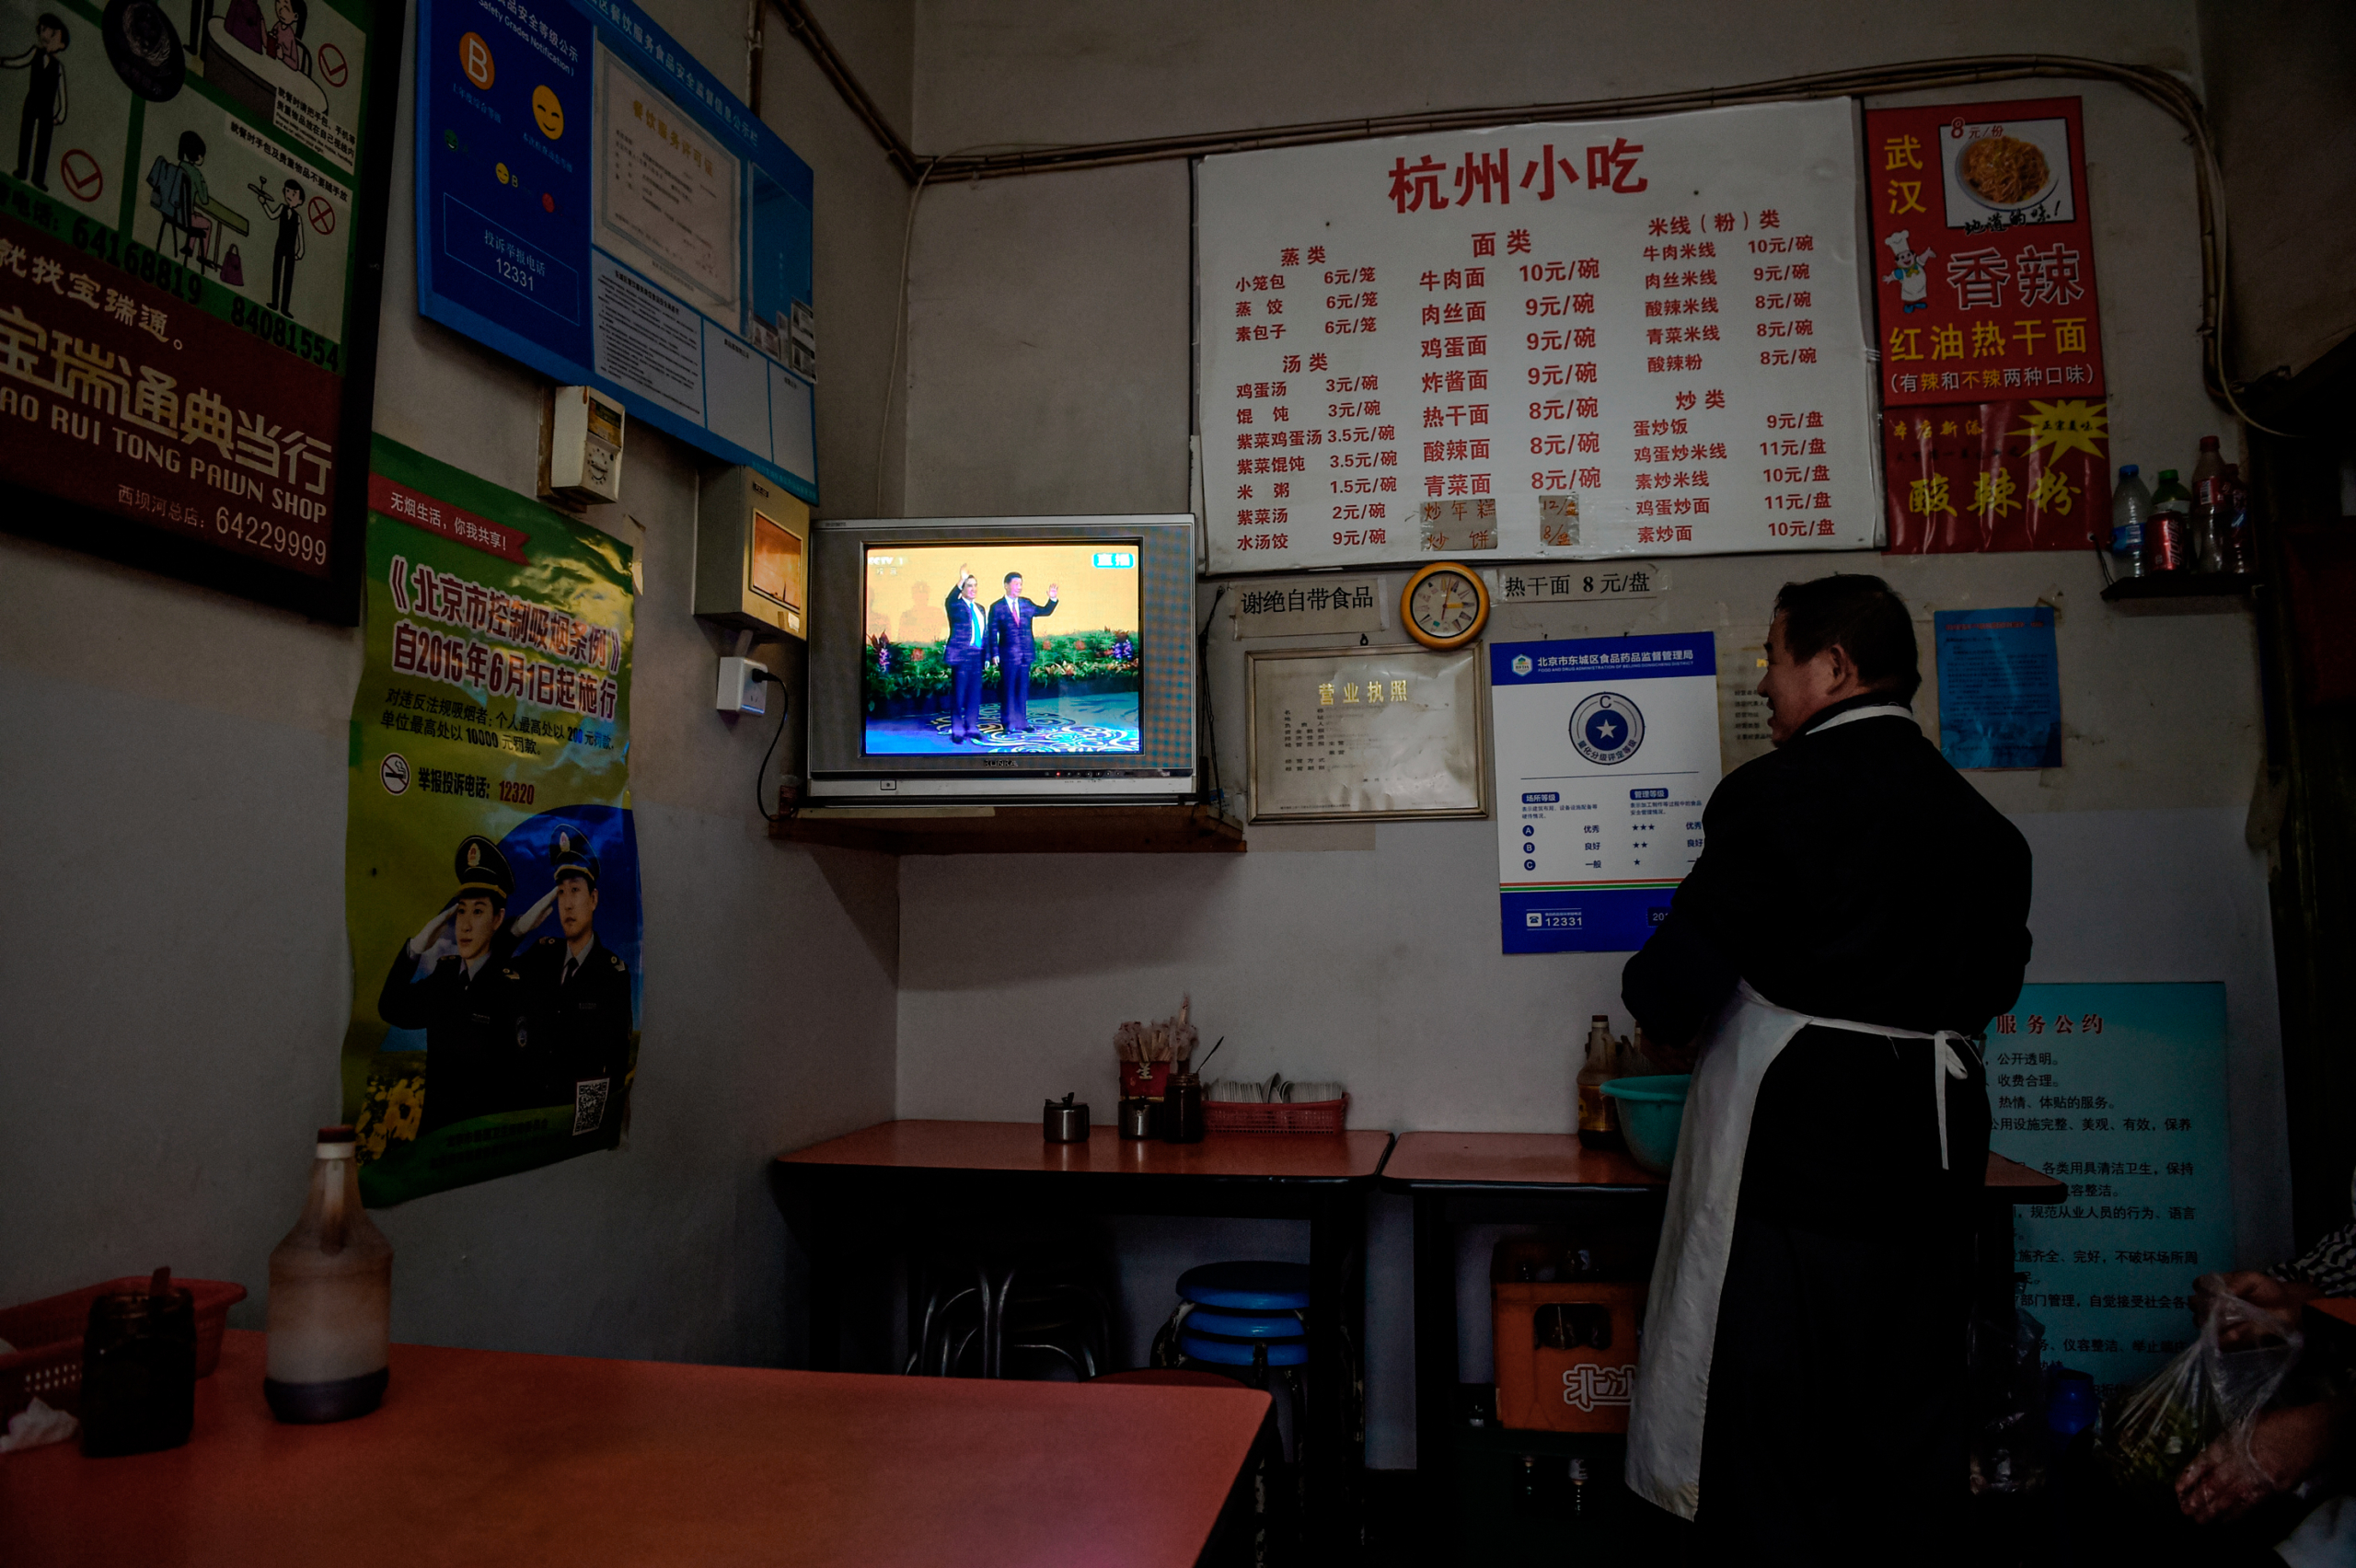 Một chủ nhà hàng xem truyền hình trực tiếp cuộc gặp ở Bắc Kinh giữa lãnh đạo Trung Quốc Tập Cận Bình và cựu Tổng thống Đài Loan Mã Anh Cửu, tại Singapore, vào ngày 07/11/2015. (Ảnh: Greg Baker/AFP qua Getty Images)